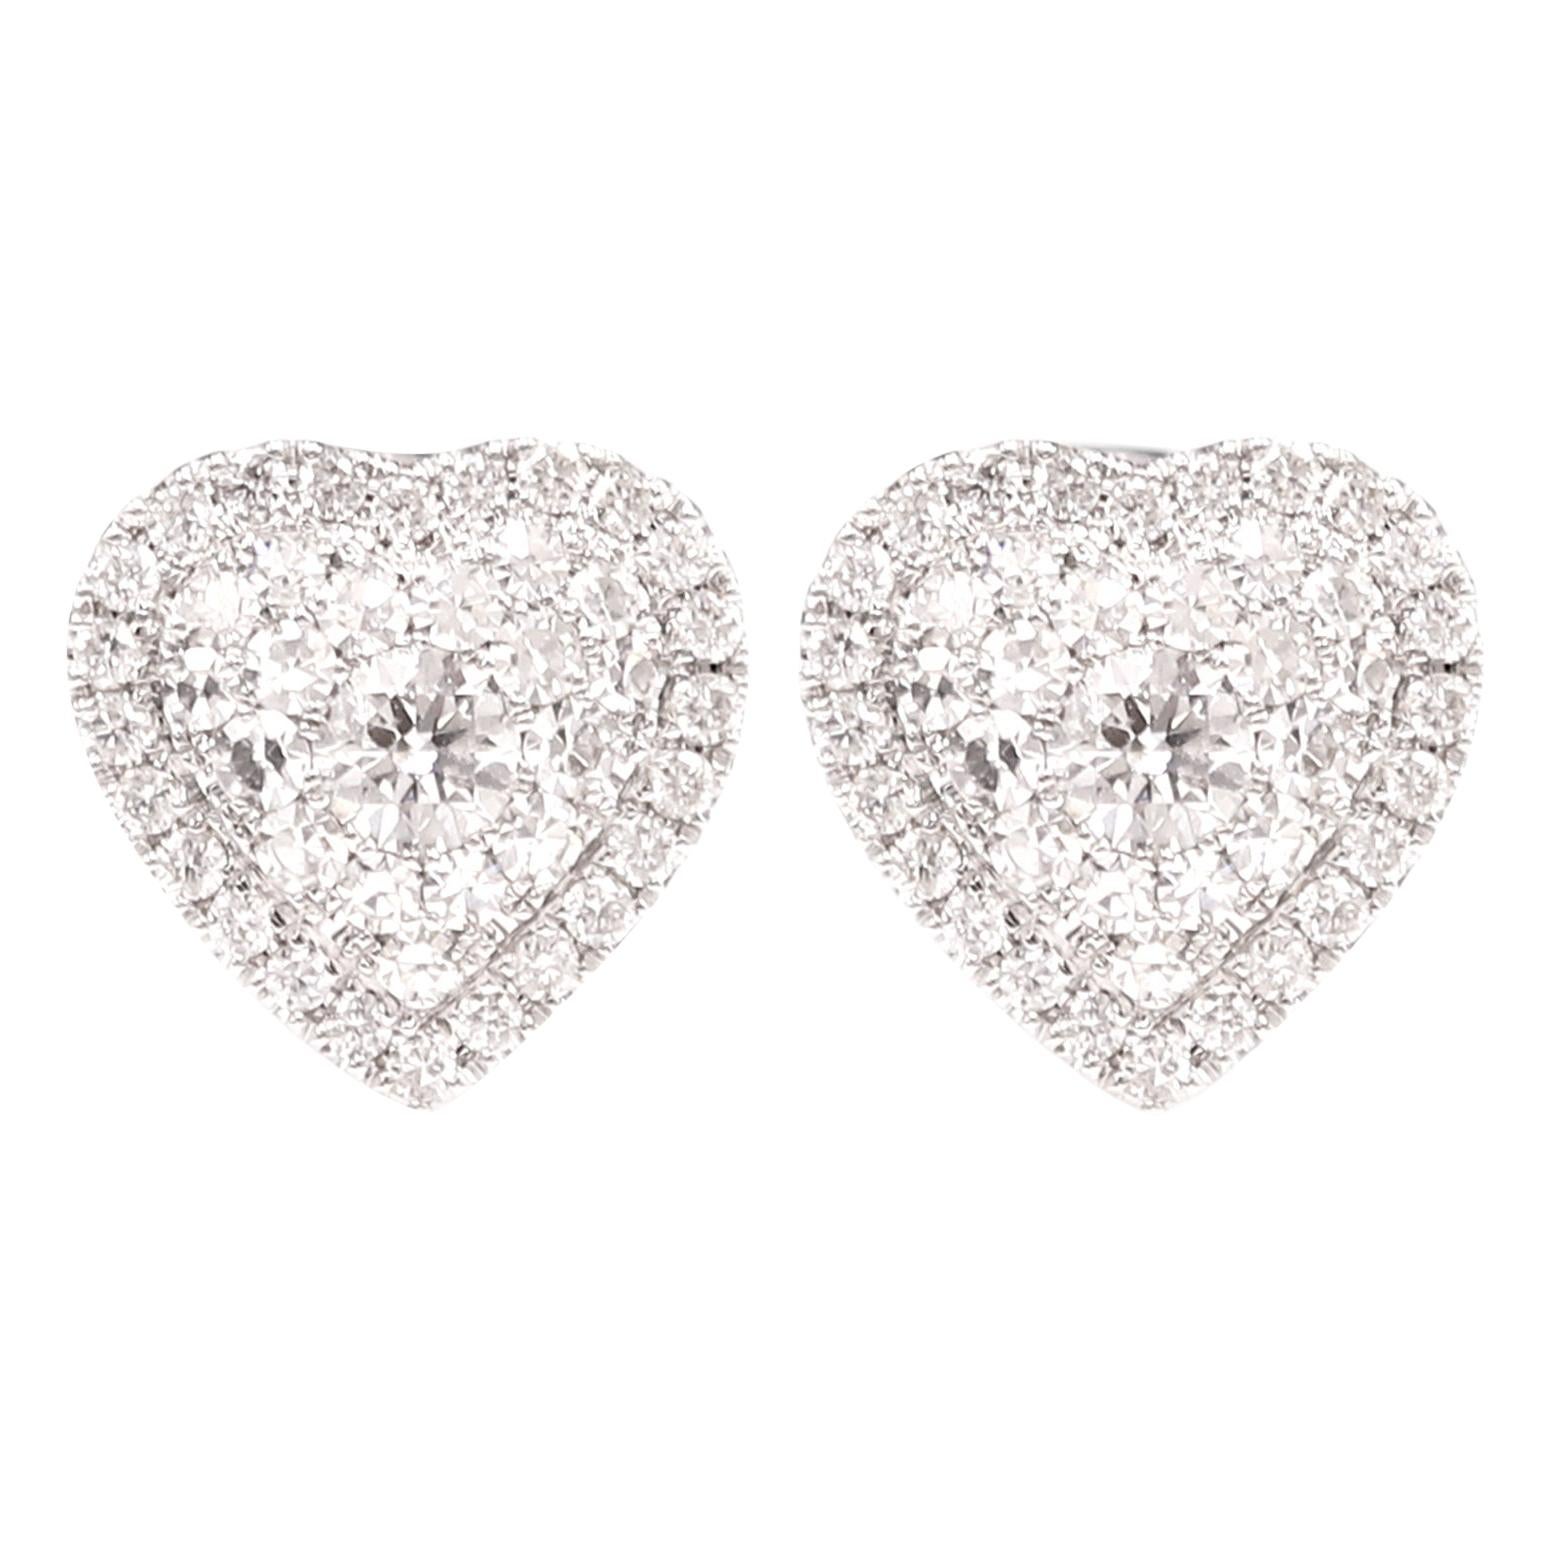 Cluster Diamond Heart Earrings 18 Karat White Gold Heart Studs